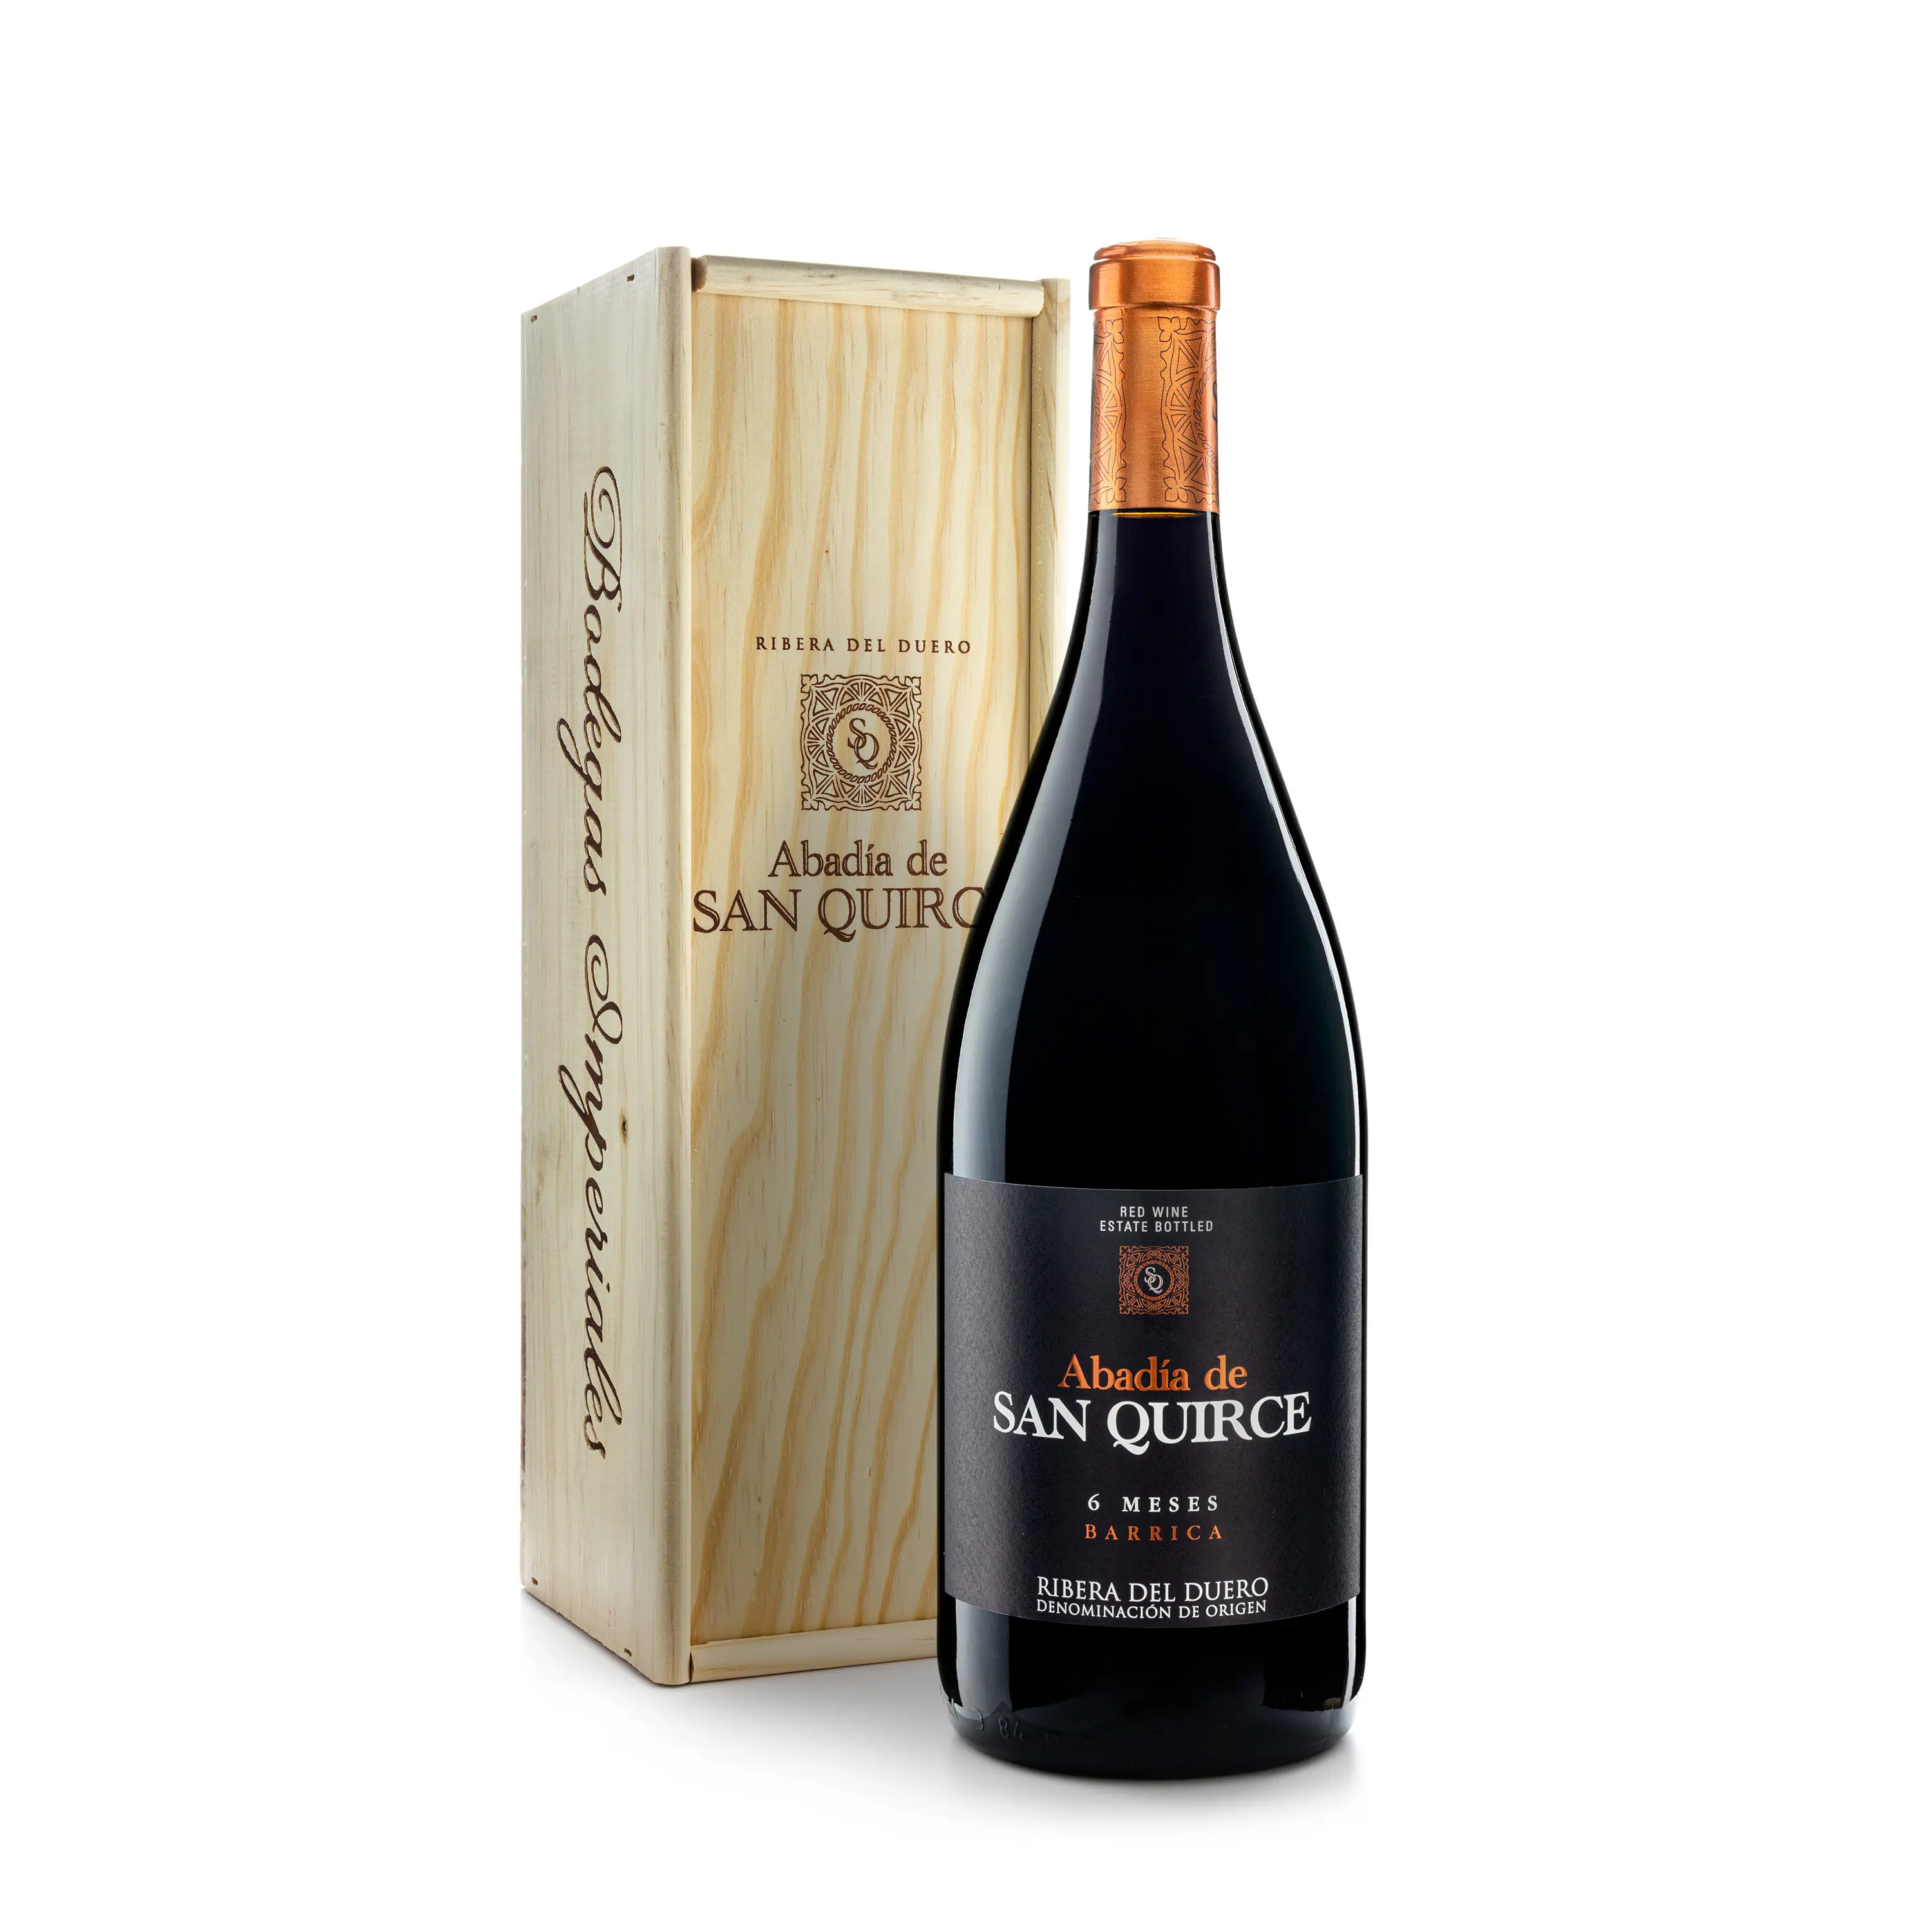 Yüksek kaliteli İspanyol kırmızı şarap Abadia San Quirce yapmak Ribera del Duero 6 ay varil masa için 1500ml şişe 14,5% alkol